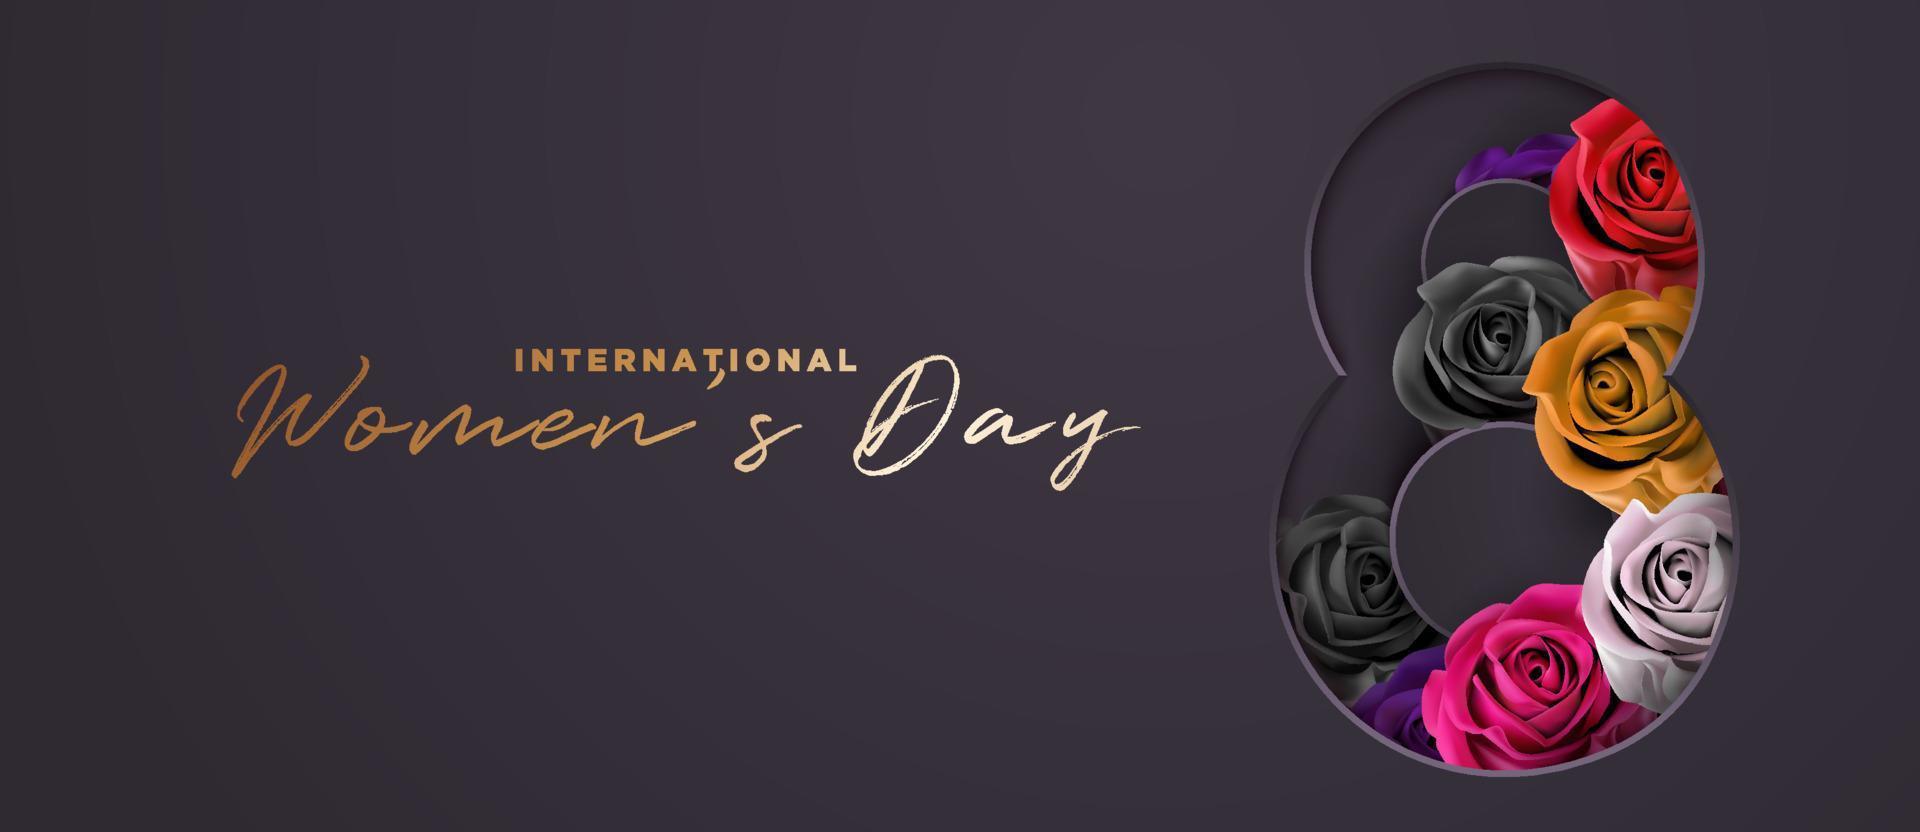 elegante luxo preto e dourado com flor rosa colorida 8 de março dia internacional da mulher banner vetor de fundo